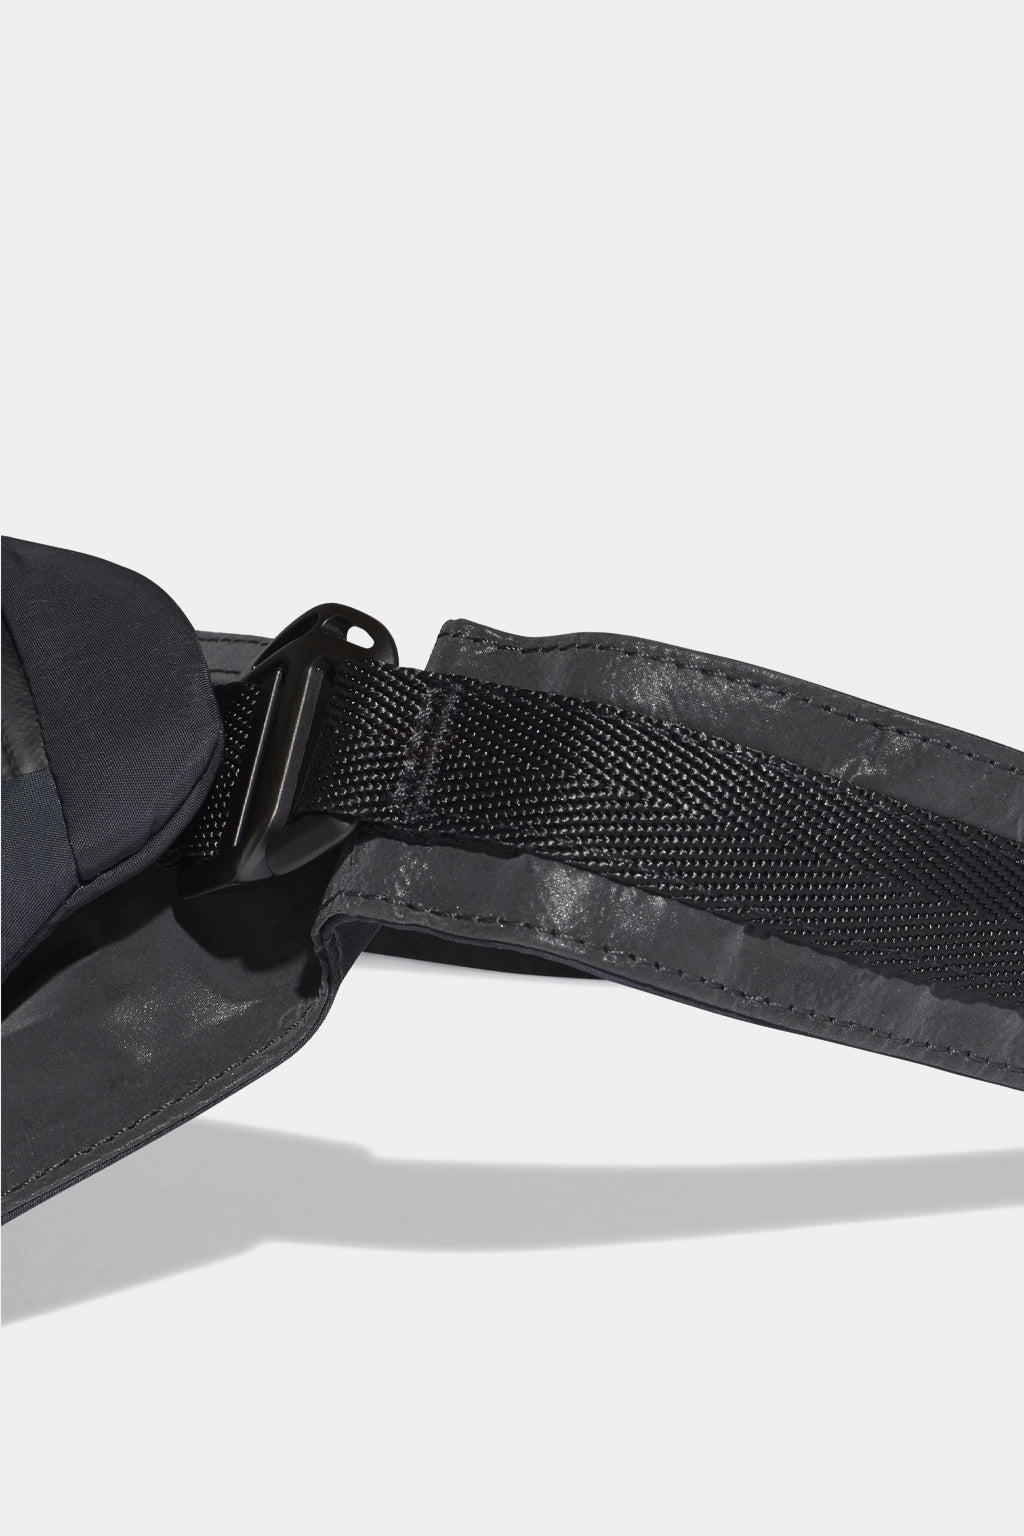 Adidas Y-3 - Ch1 Reflective Belt Bag